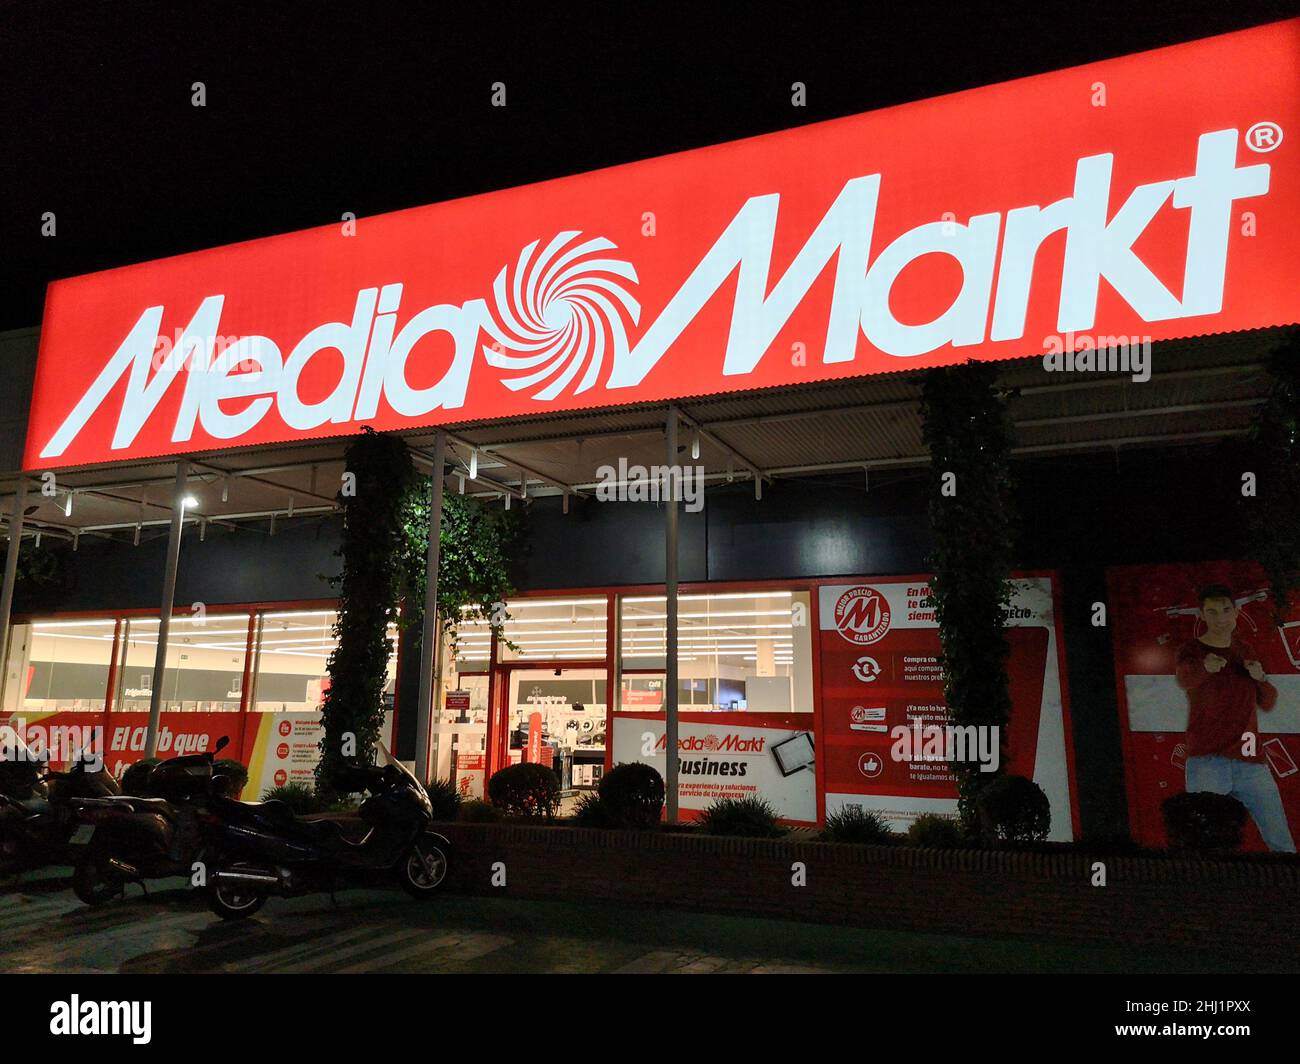 Media Markt store in Costa, Malaga province, Andalusia, Stock Photo Alamy